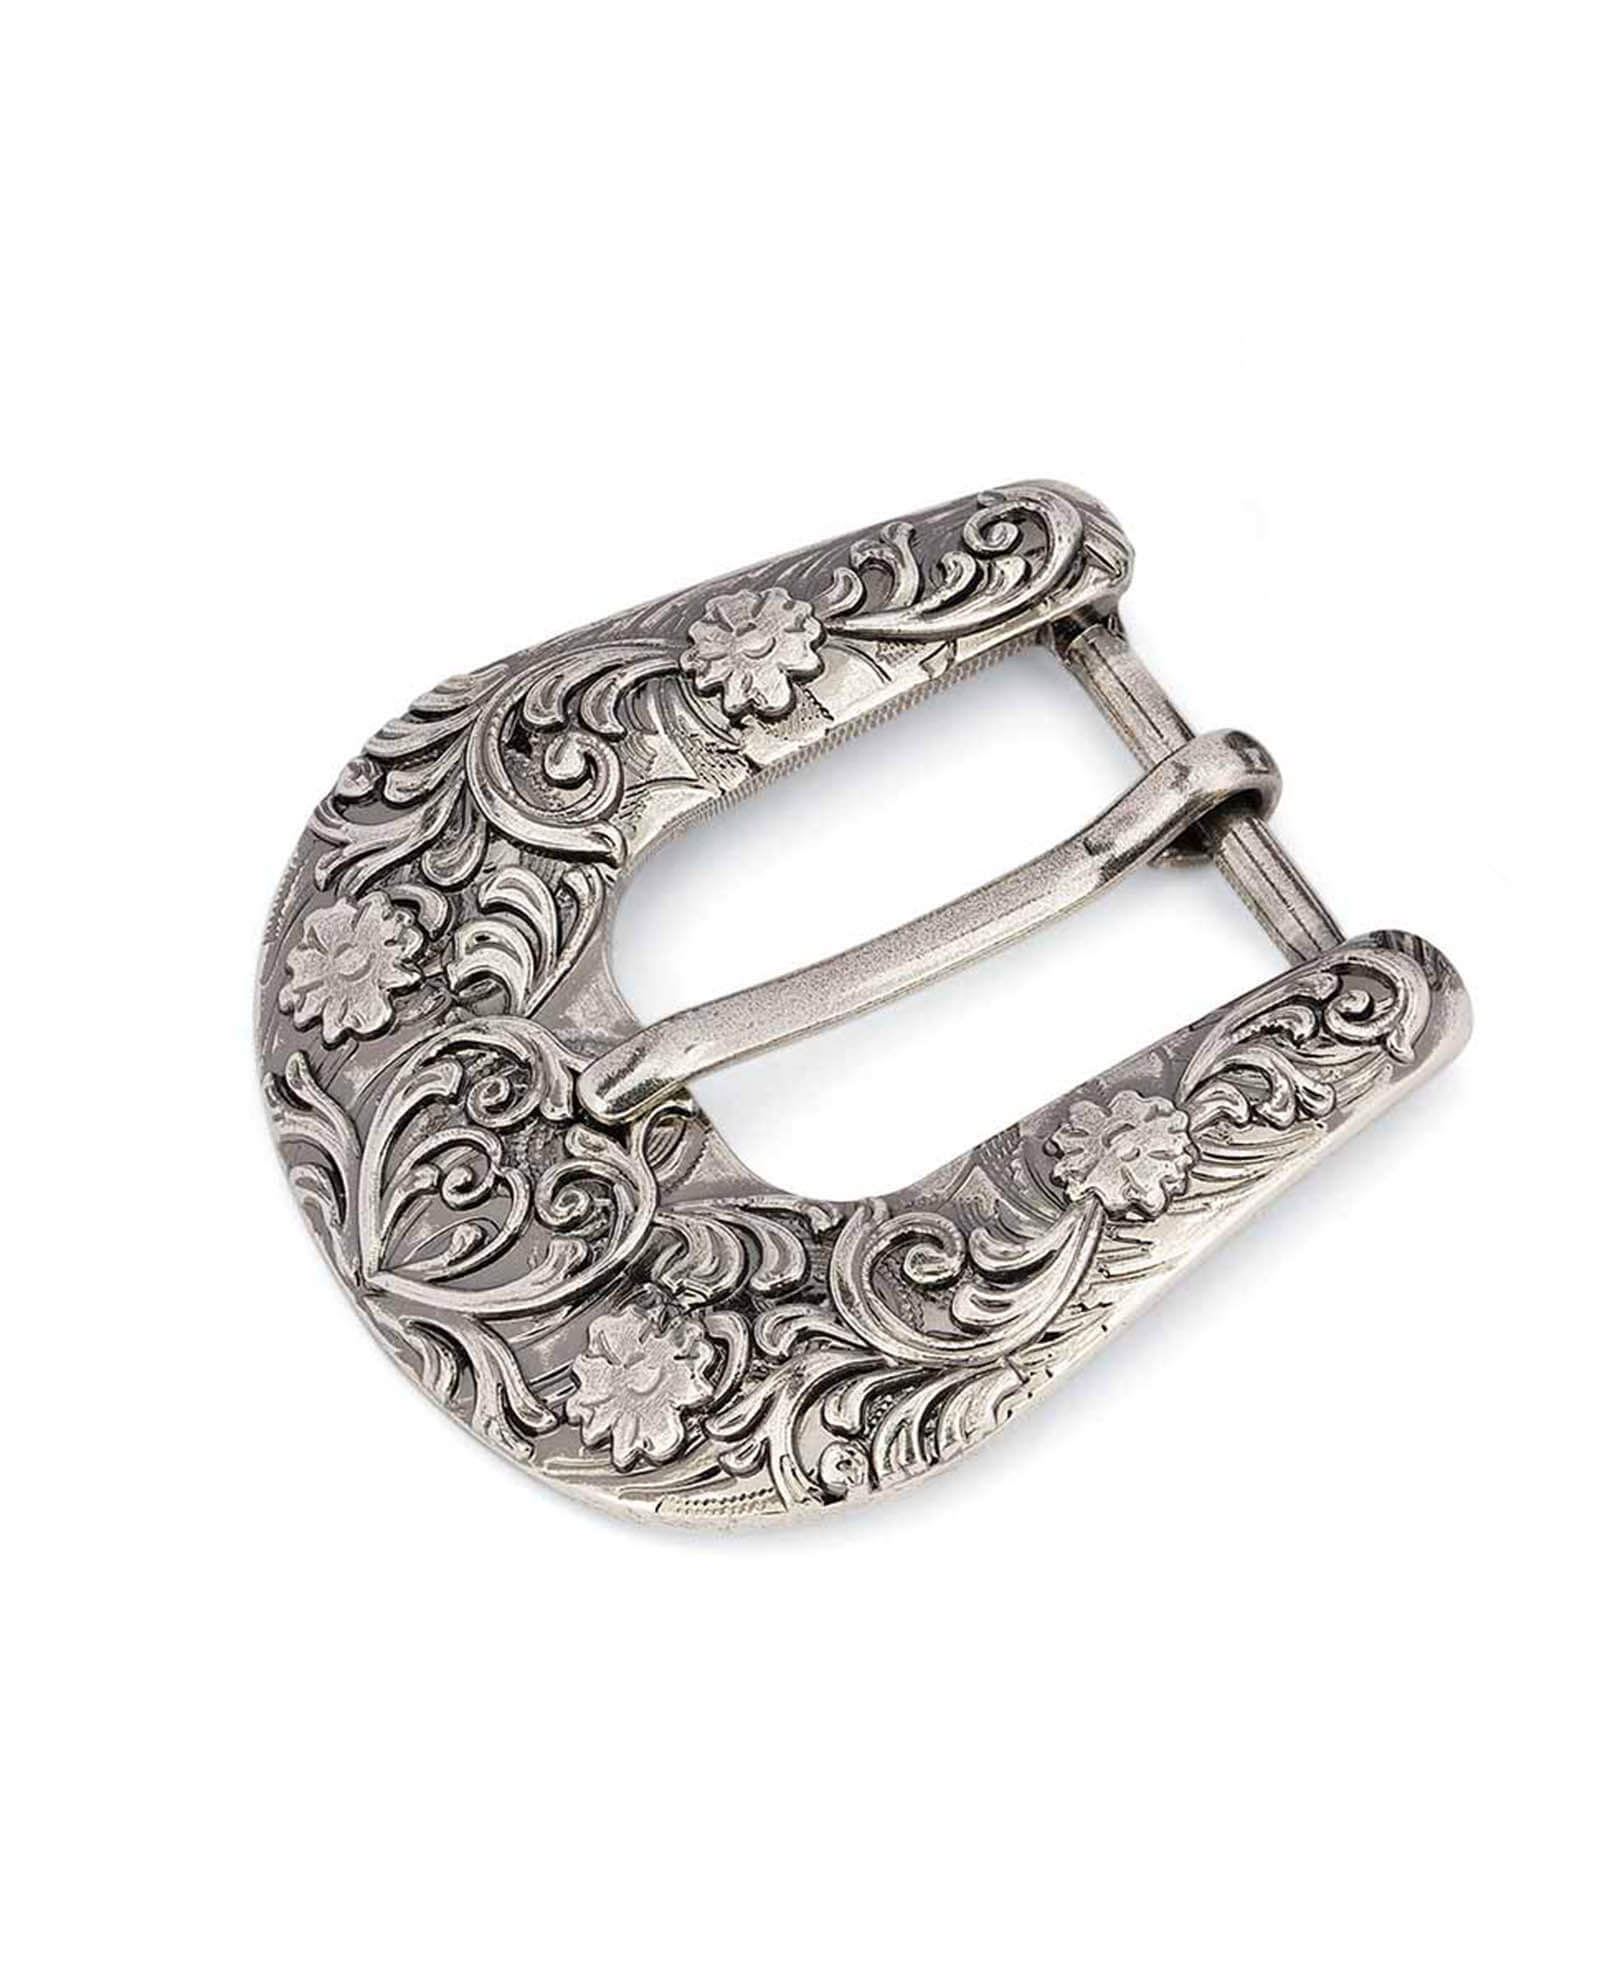 Men Women Belt Buckle Antique Silver Metal Western Cross – alwaystyle4you